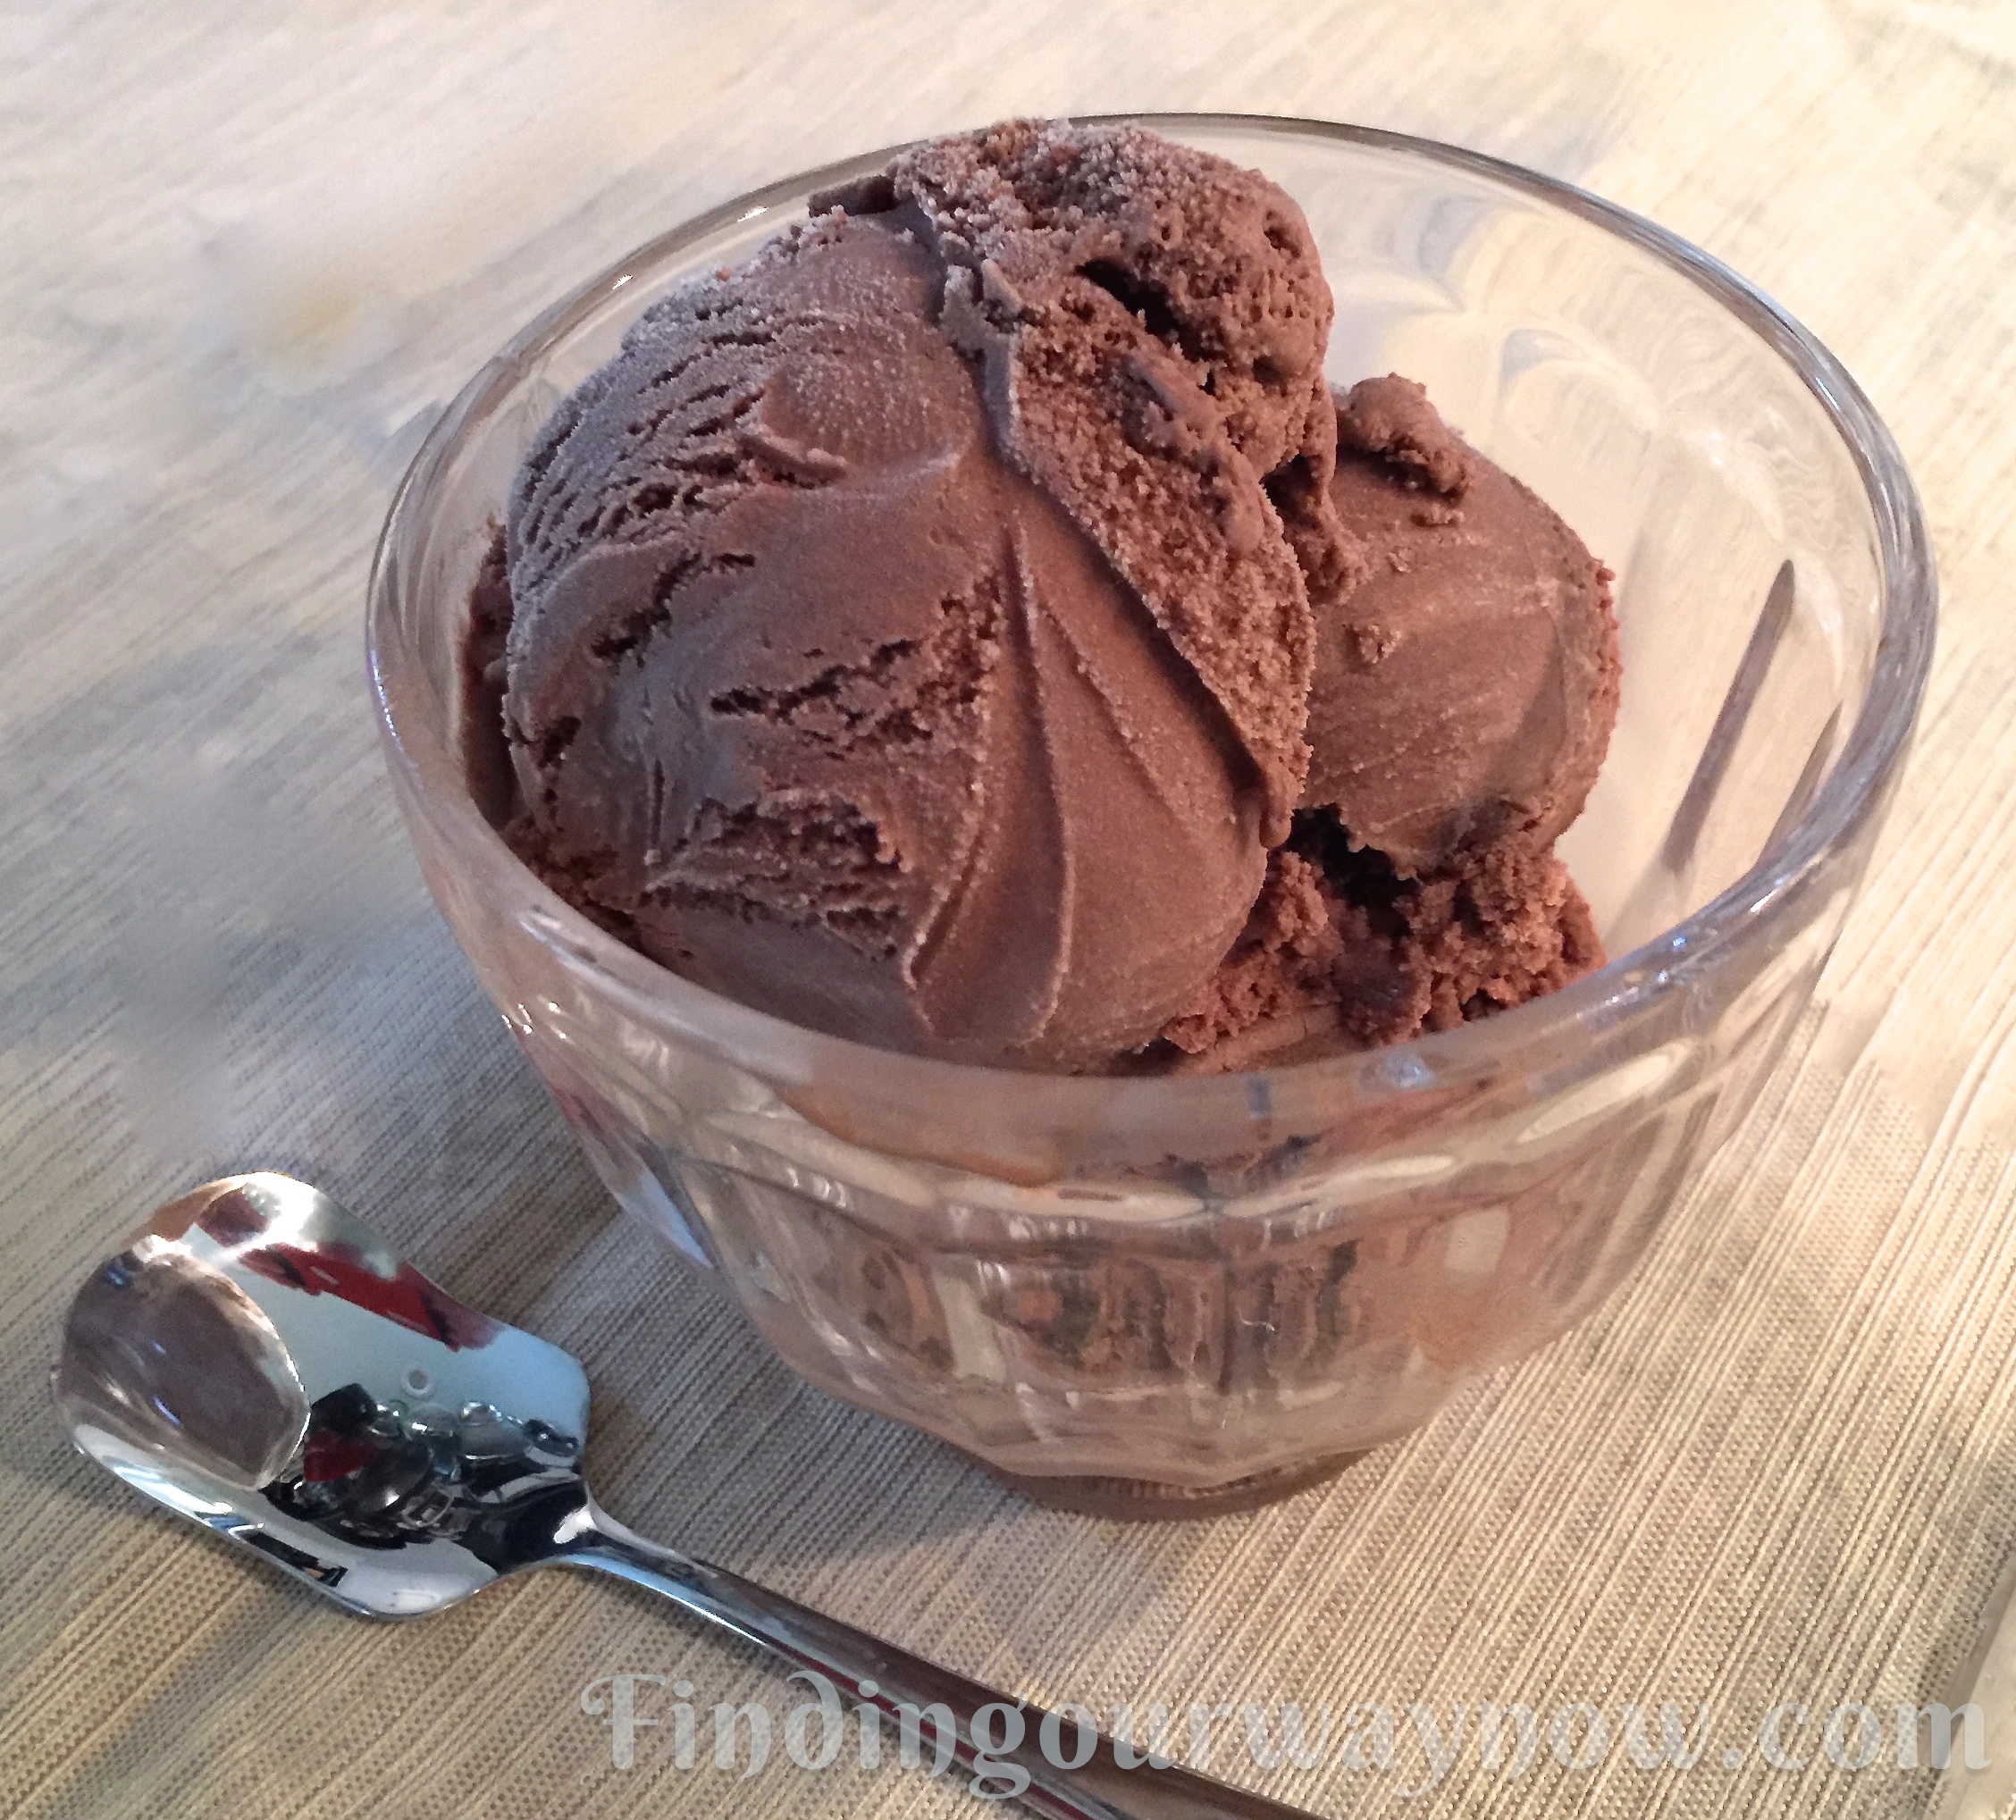 Homemade Chocolate Ice Cream 1 